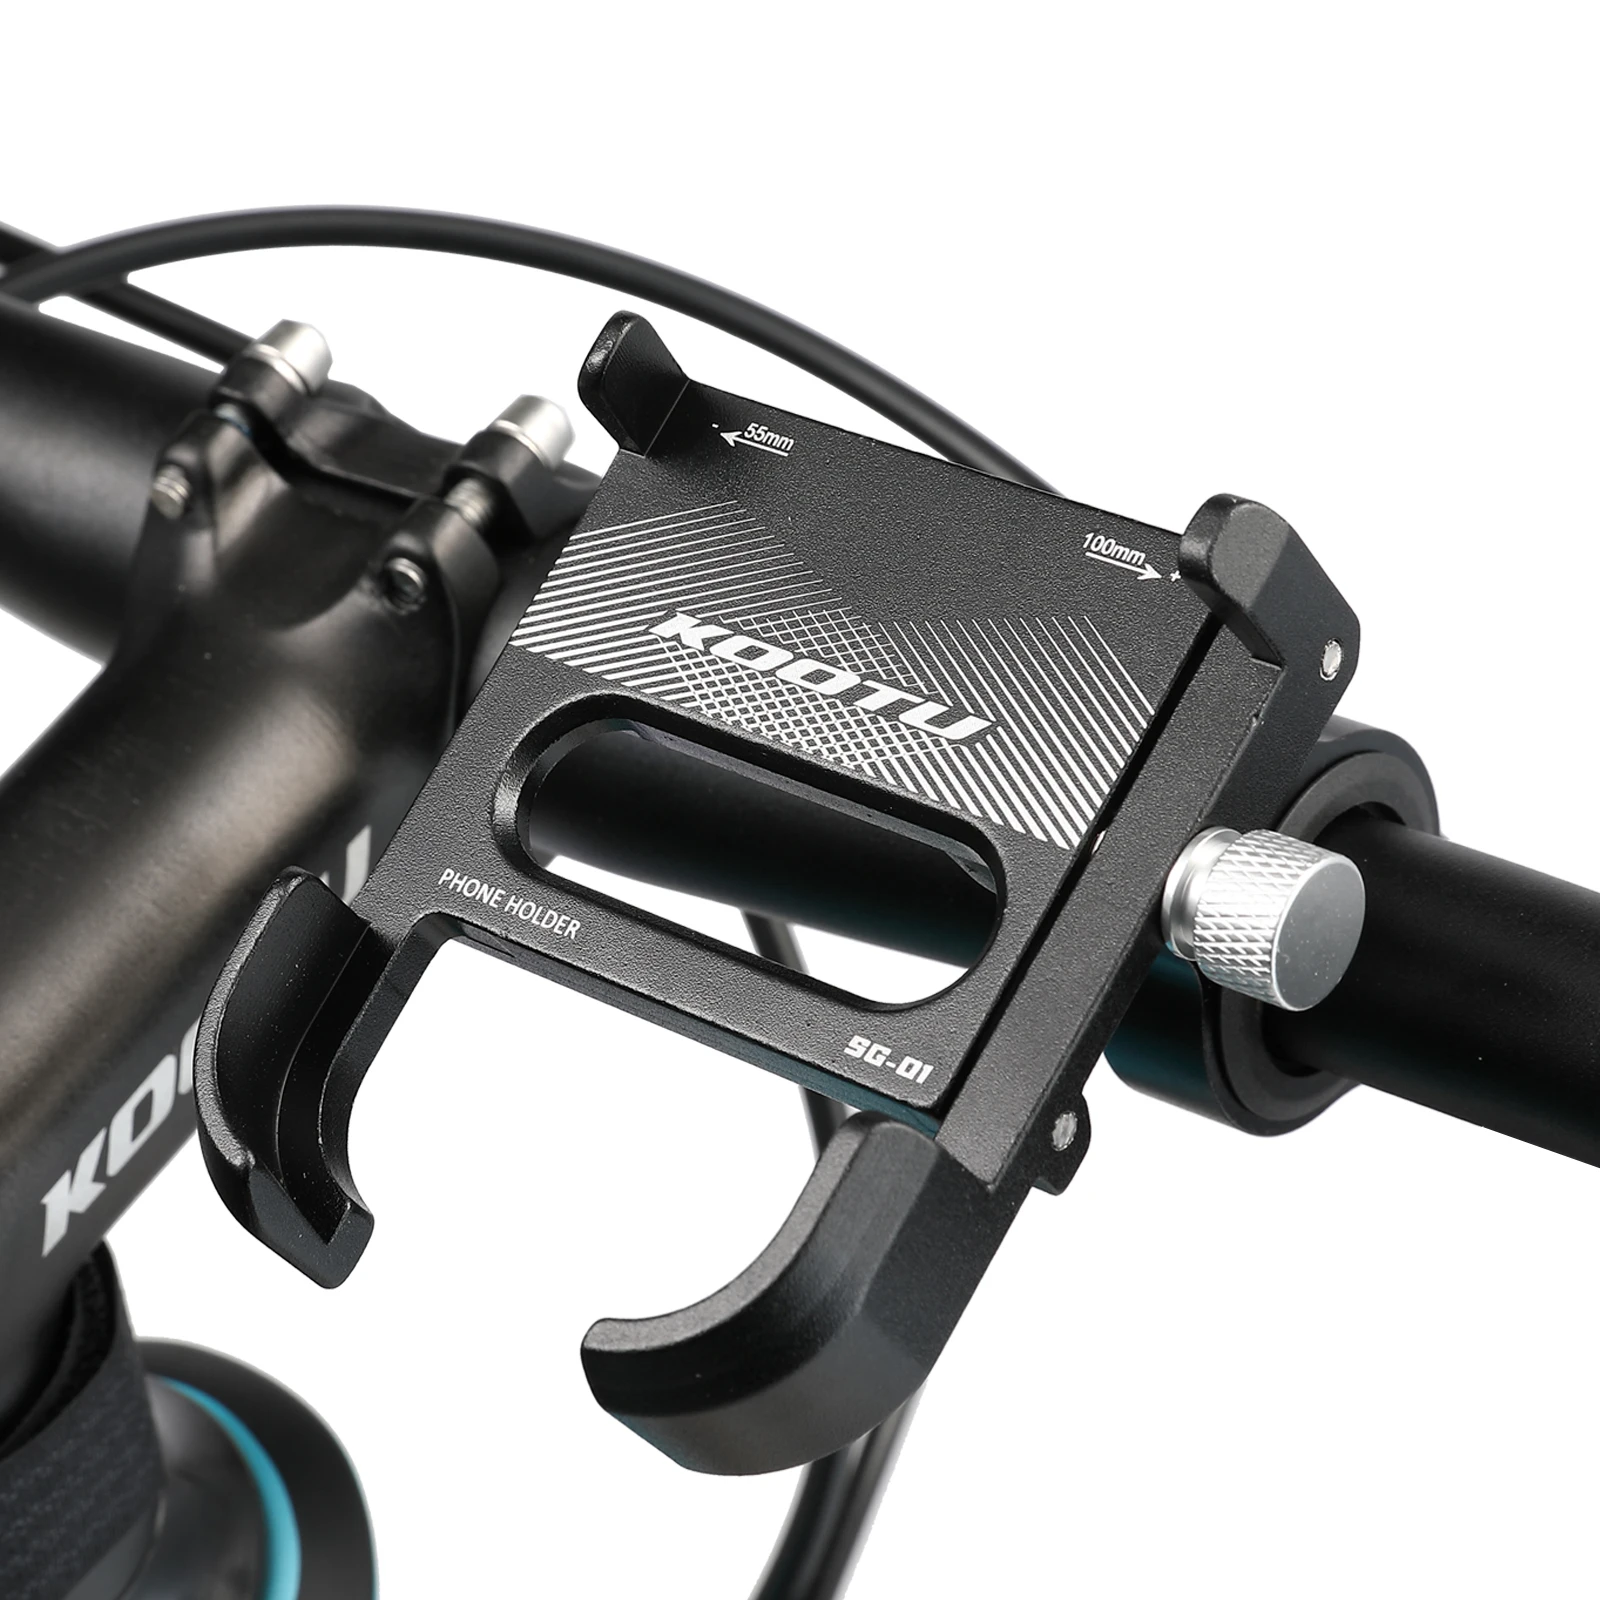 KOOTU bicycle phone holder adjustable phone holder